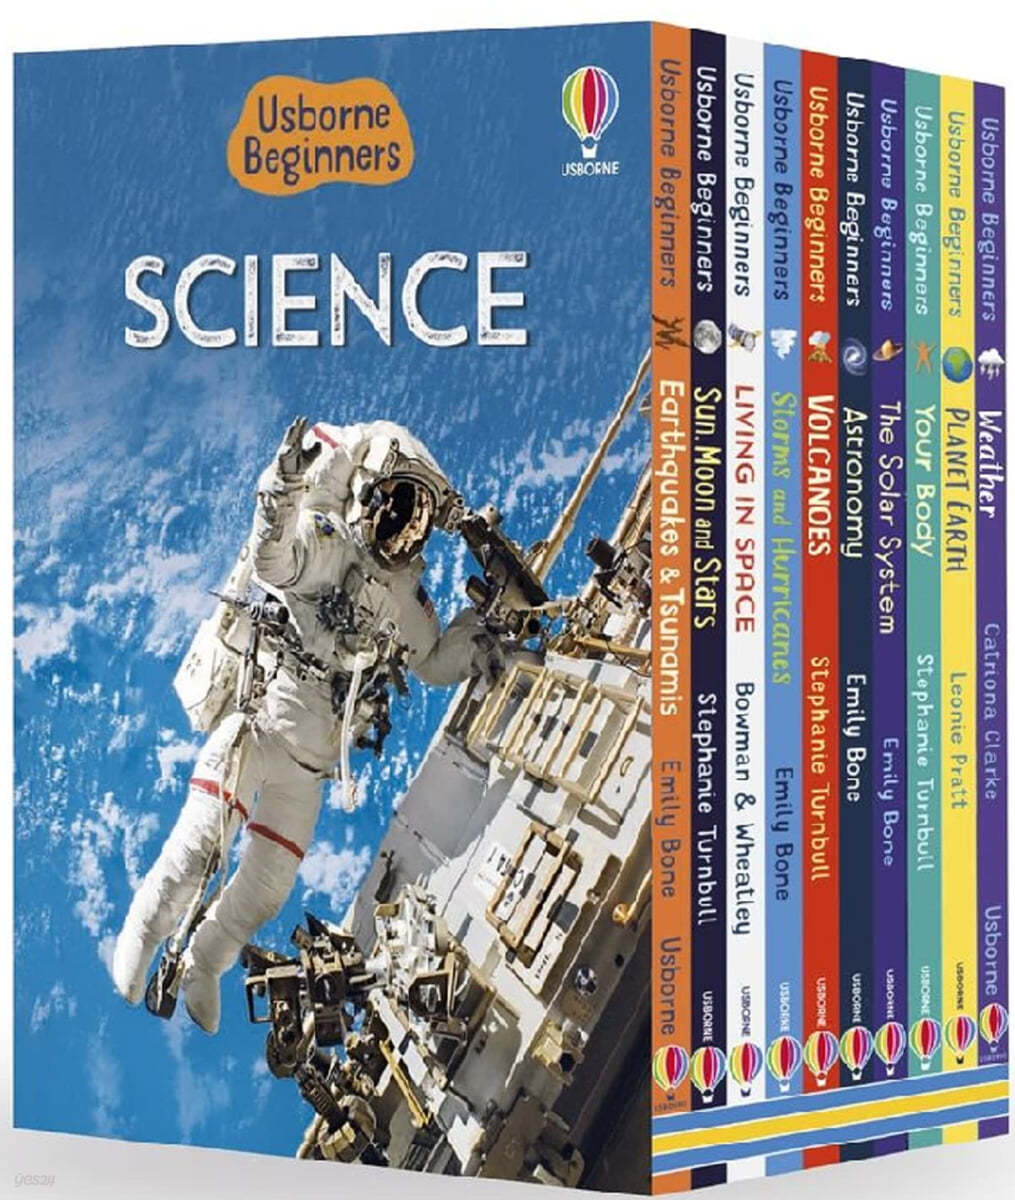 어스본 어린이 과학 하드커버 10종 세트 Usborne Beginners Series Science - 10 Books Collcection